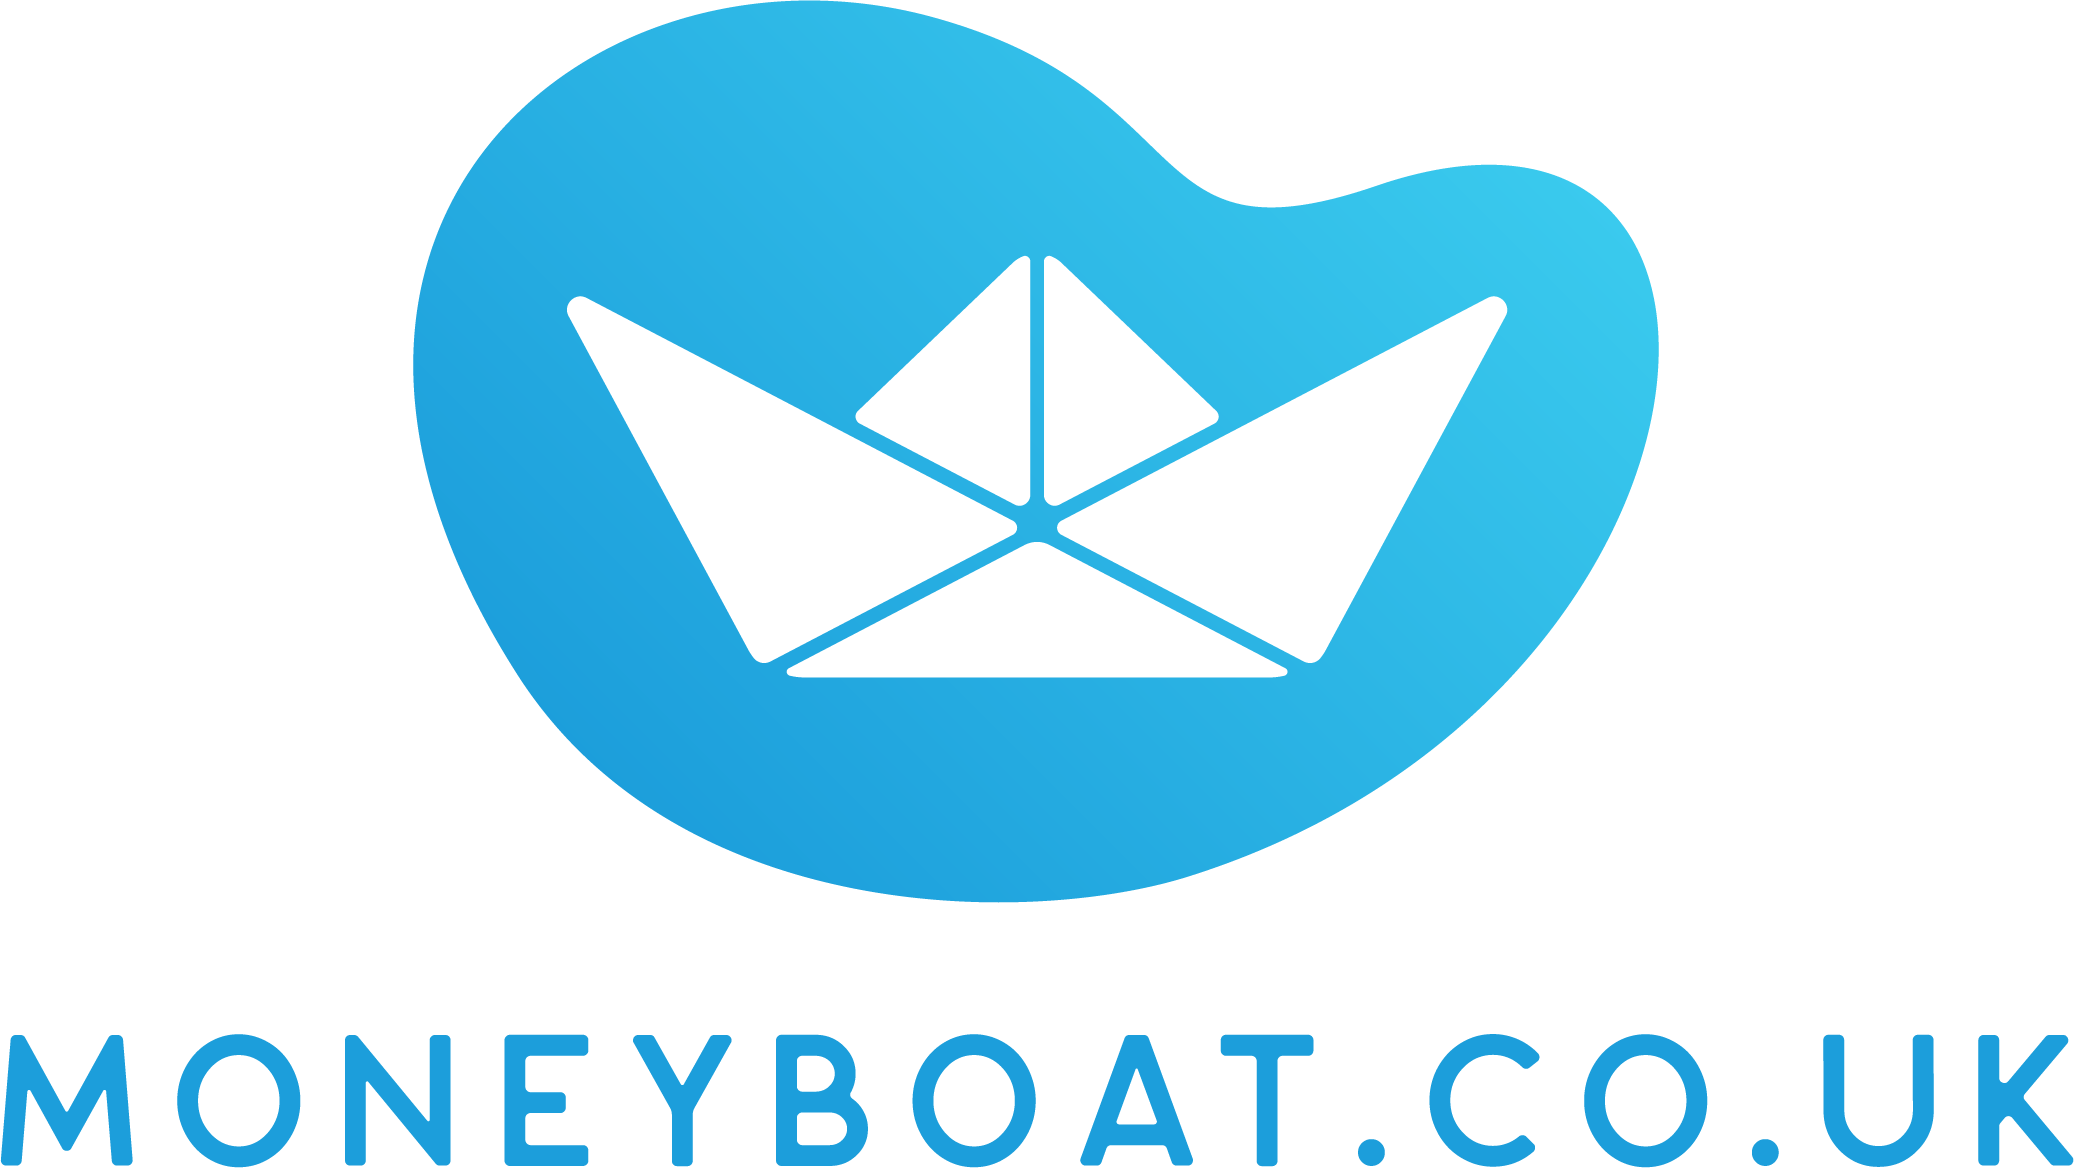 Moneyboat.co.uk 07